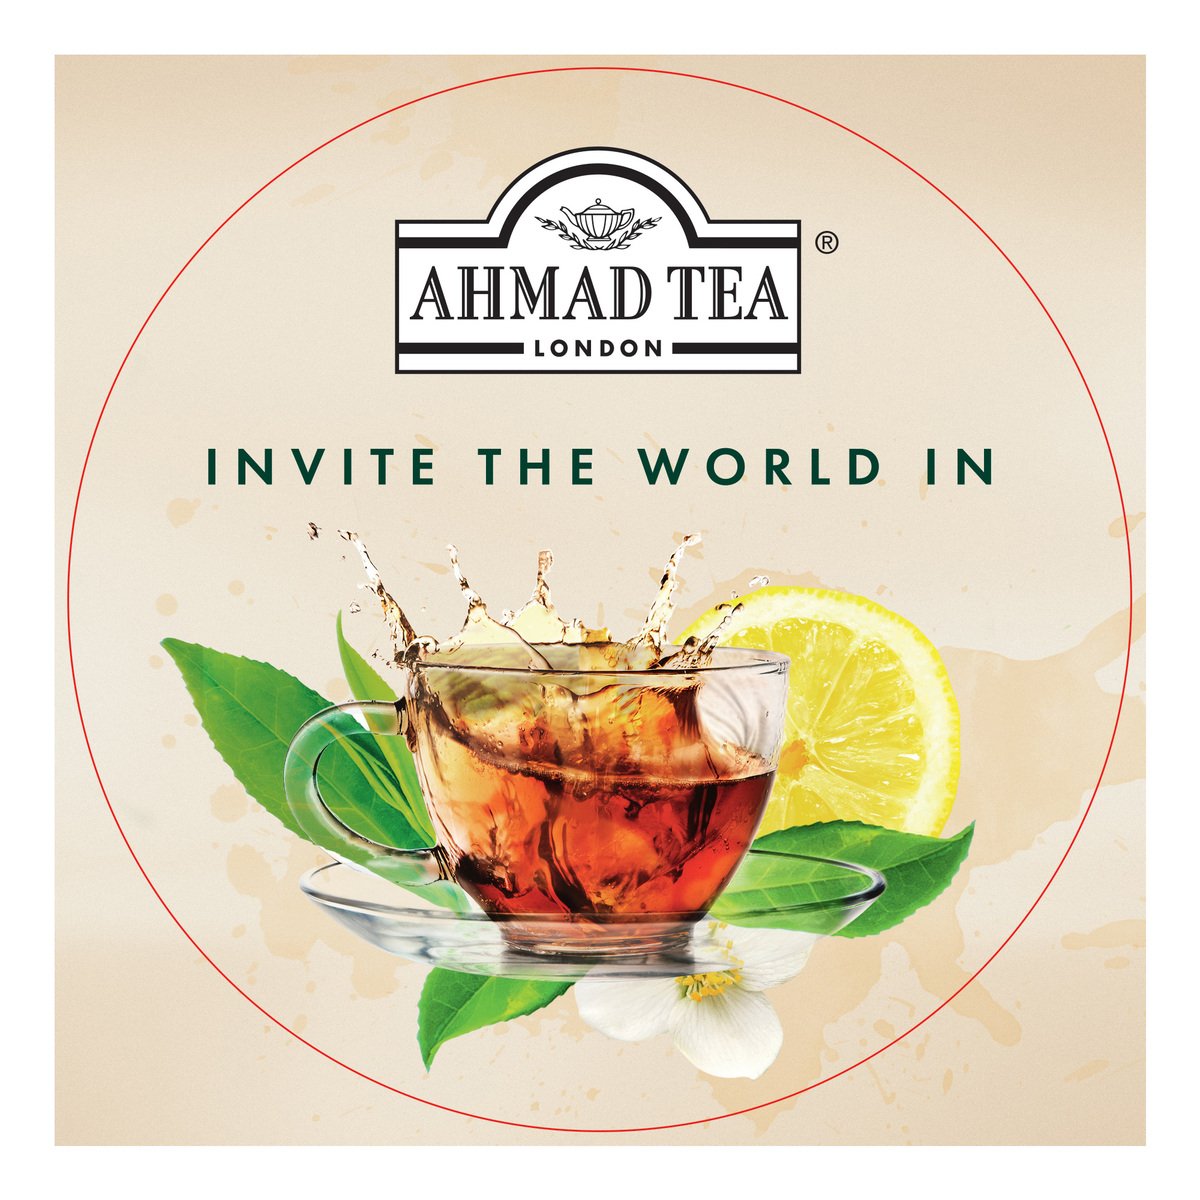 Ahmad Tea Jasmine Romance Green Tea 20 Teabags 40 g